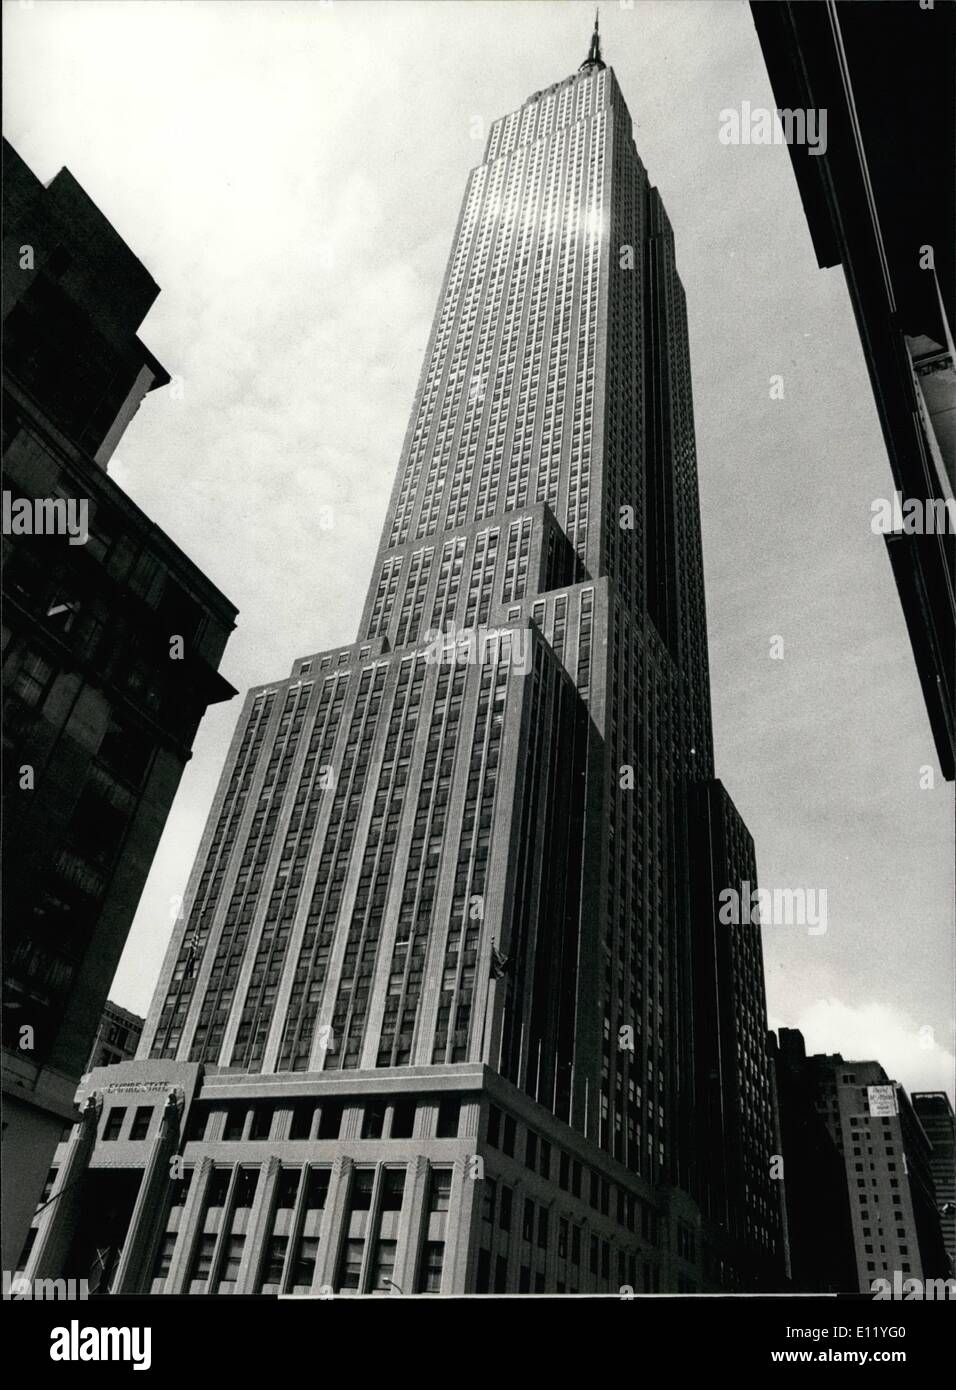 4. April 1981 - 5. Anniverasayr der das Empire State Building, das Empire State building, einmal der weltweit größte Gebäude, ist die Vollendung des 50. Jubiläum am 1. Mai. Obwohl andere riesige Gebäude wie der New York World Center und der Sears-Türme an Chicago Überoberseite 449 Metern '' Empire State '' Handel ist es heute dennoch ein Anziehungspunkt für Tausende von Touristen in New York. Bild zeigt das "Empire State Building" im Zentrum von Manhattan. Stockfoto